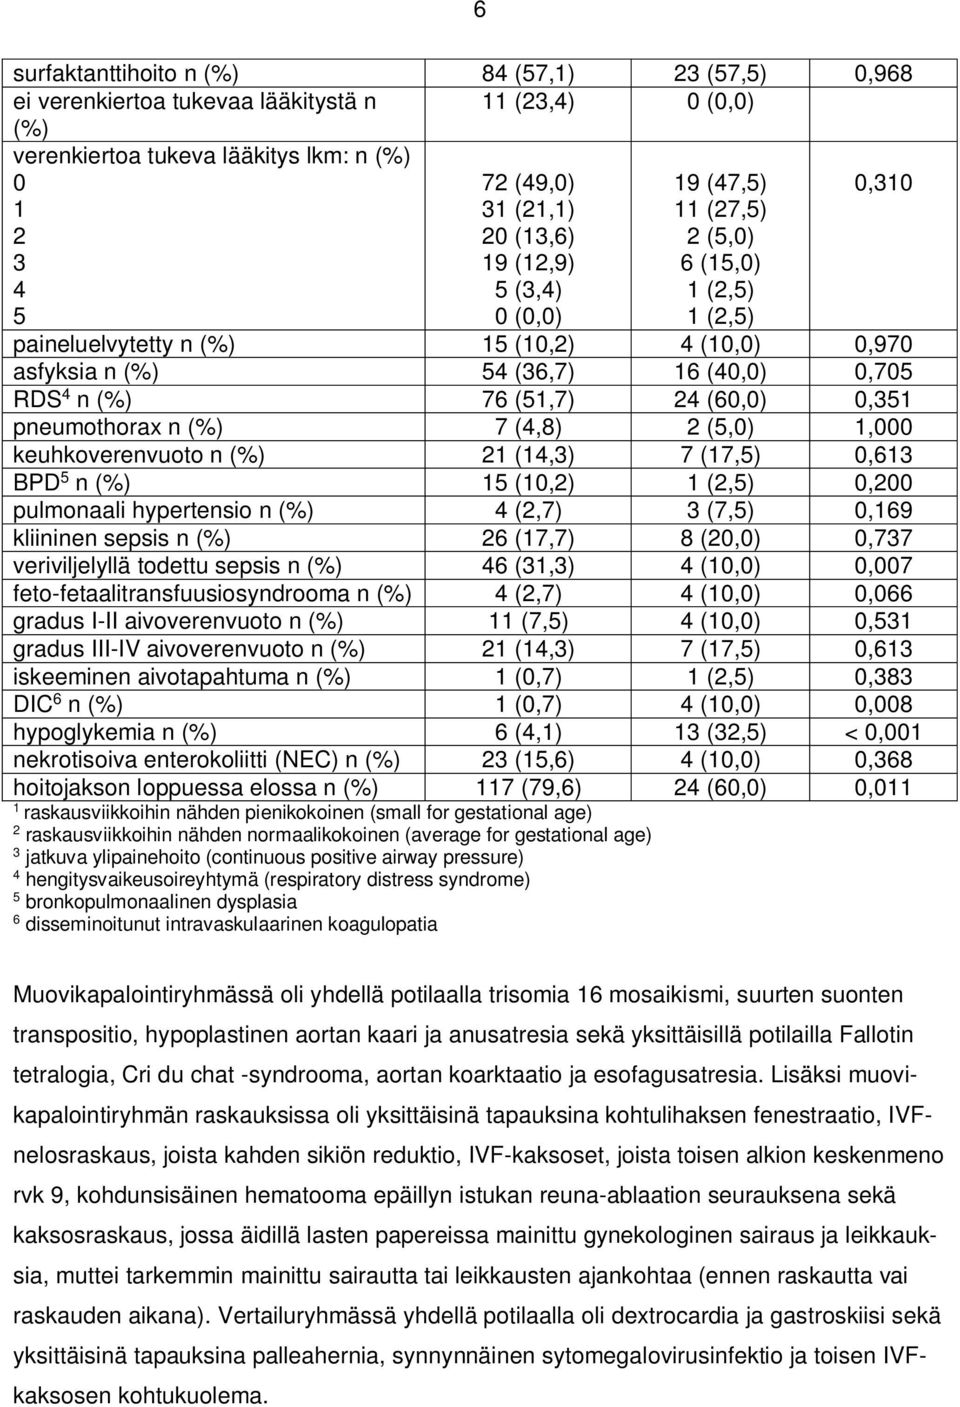 pneumothorax n (%) 7 (4,8) 2 (5,0) 1,000 keuhkoverenvuoto n (%) 21 (14,3) 7 (17,5) 0,613 BPD 5 n (%) 15 (10,2) 1 (2,5) 0,200 pulmonaali hypertensio n (%) 4 (2,7) 3 (7,5) 0,169 kliininen sepsis n (%)